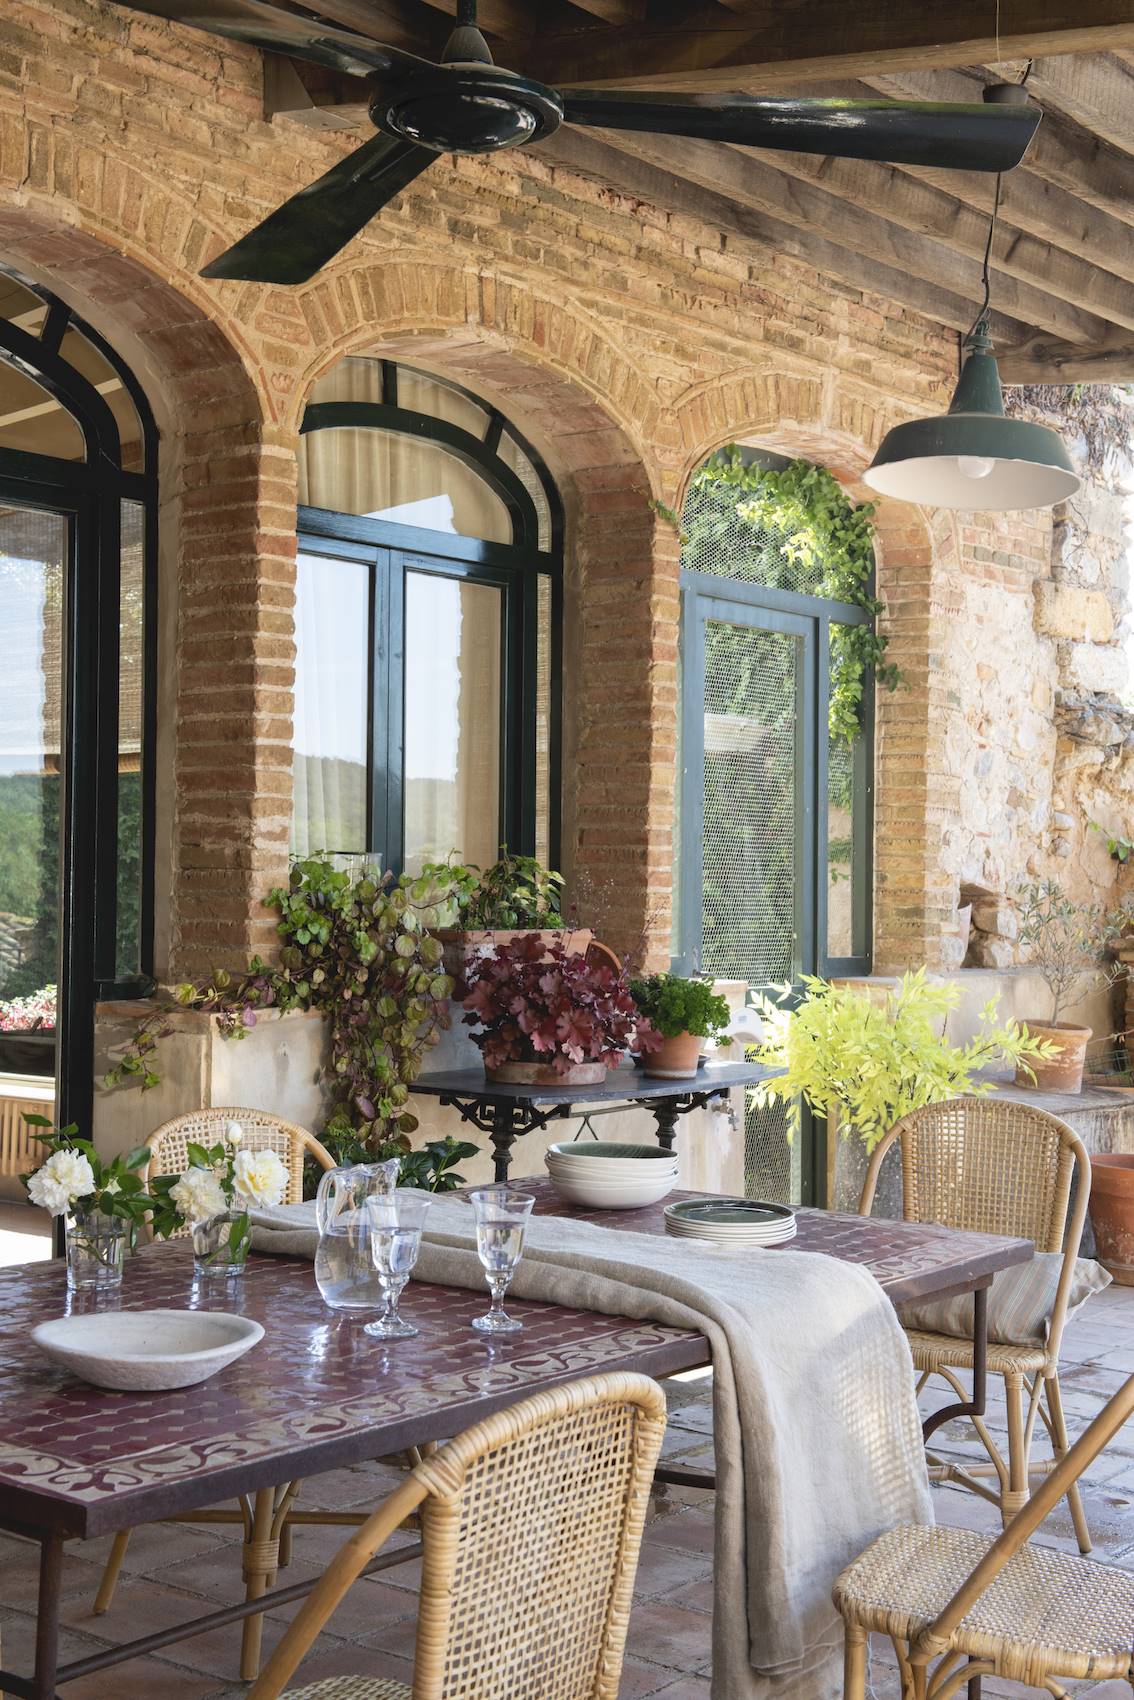 Comedor exterior con aire industrial y una gran mesa de jardín de mosaico de piedra. 